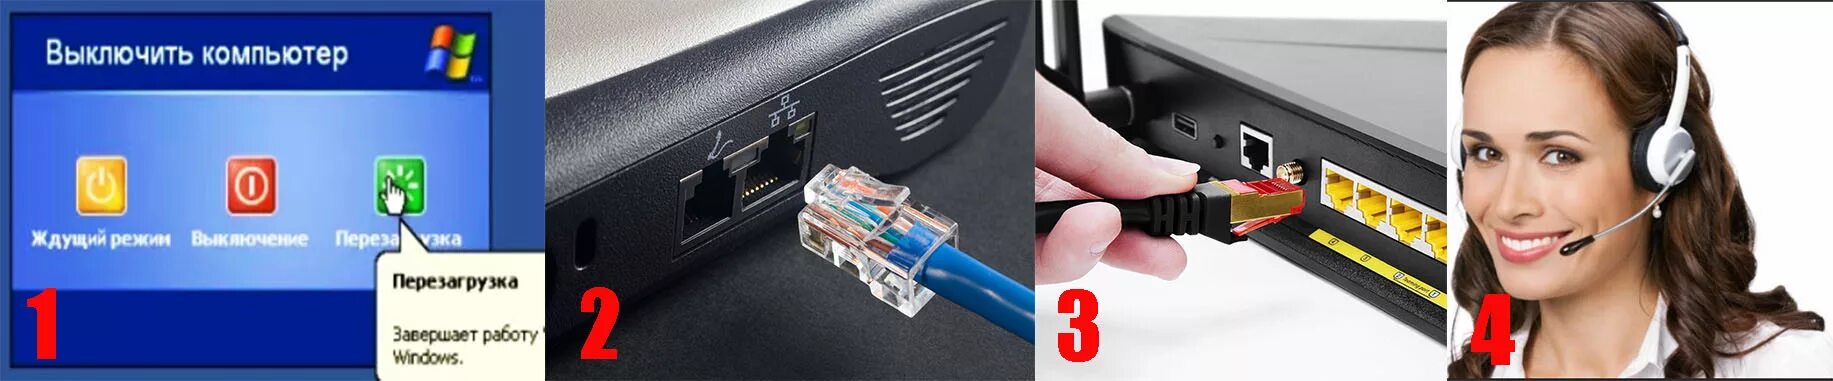 Отсутствует подключение кабеля интернета. Патч-корд для роутера. Кабель Ethernet подключен неправильно или поврежден. Сетевой кабель для интернета подключен неправильно или поврежден. Ноутбук не видит сетевой кабель (шнур интернета).